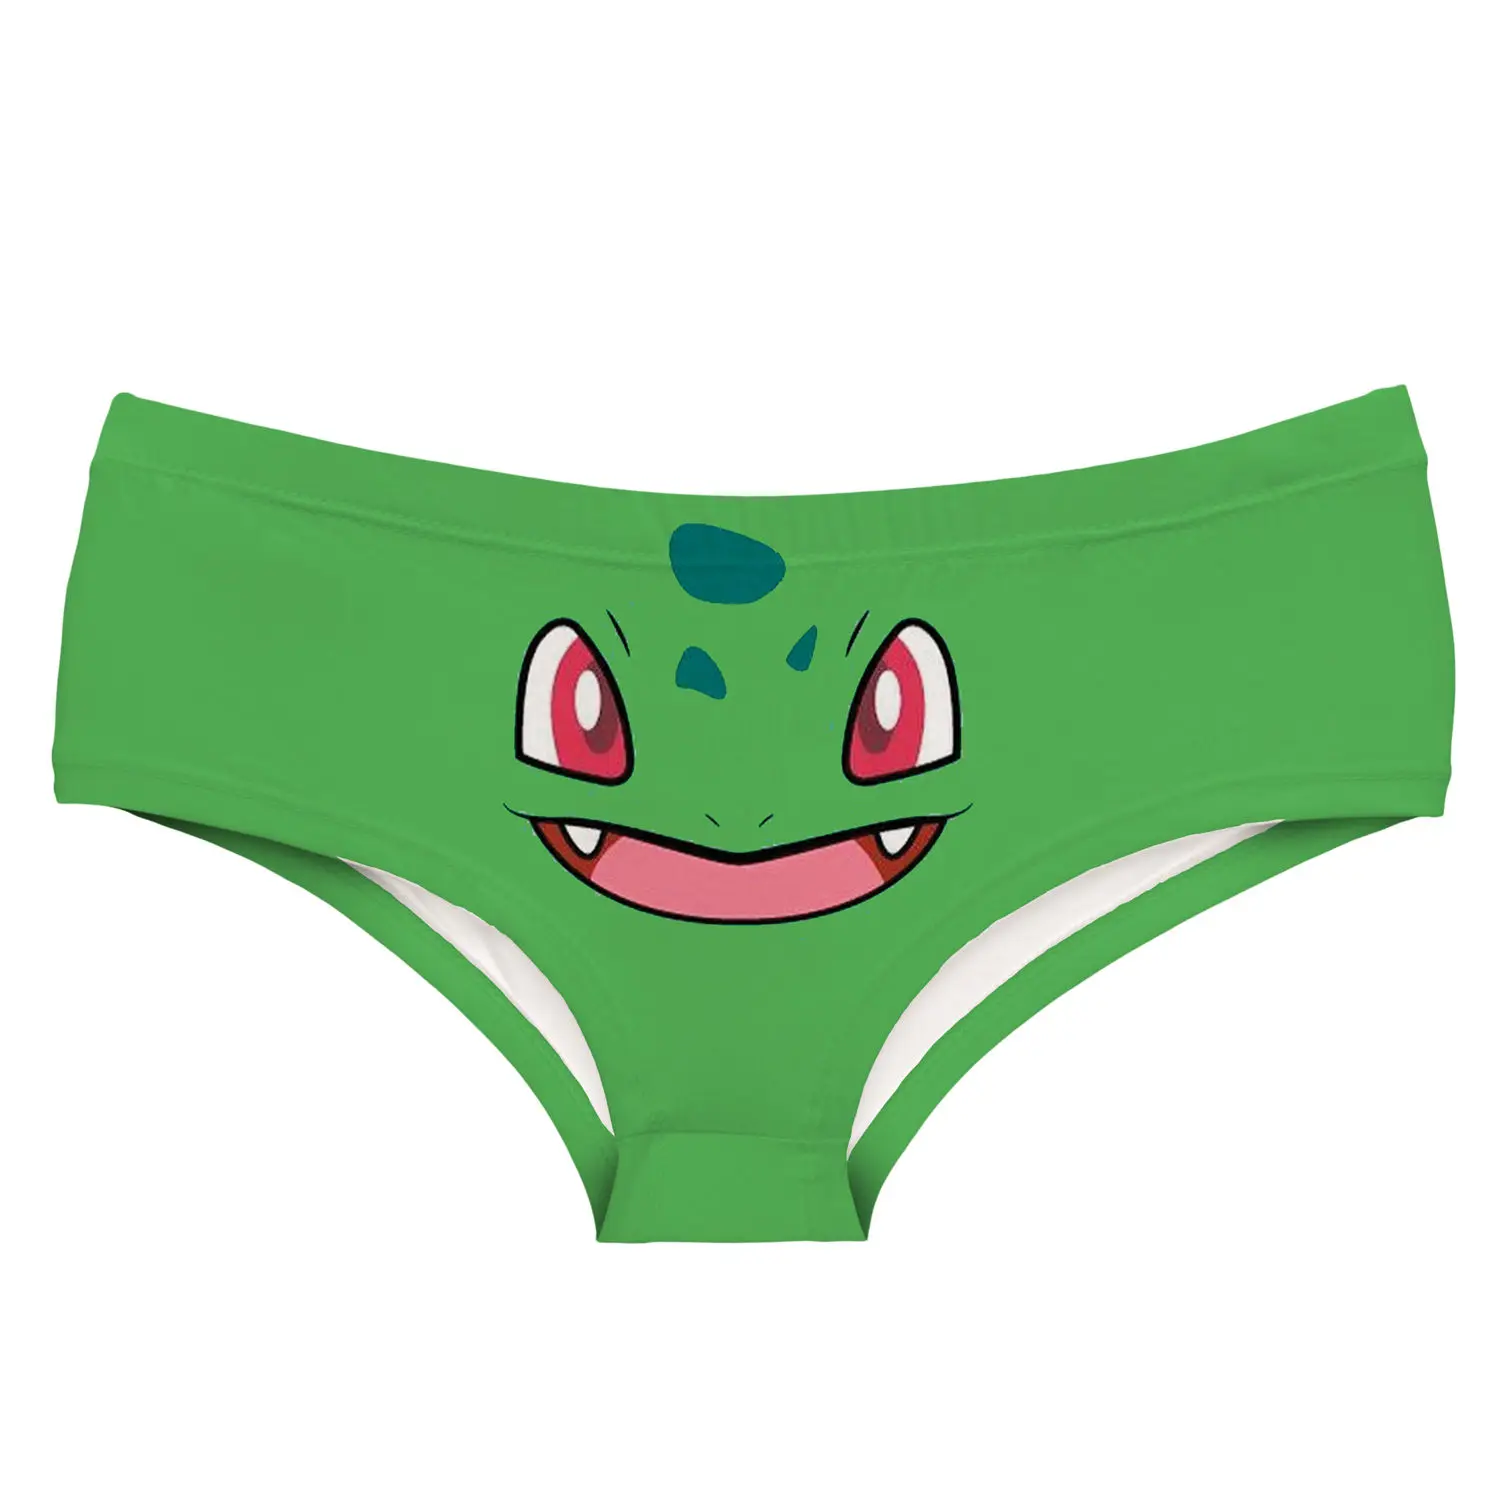 Покемон Бульбазавр, зеленое нижнее белье с интересным принтом для женщин, сексуальное женское белье, стринги, трусы, милые трусики для женщин - Цвет: green